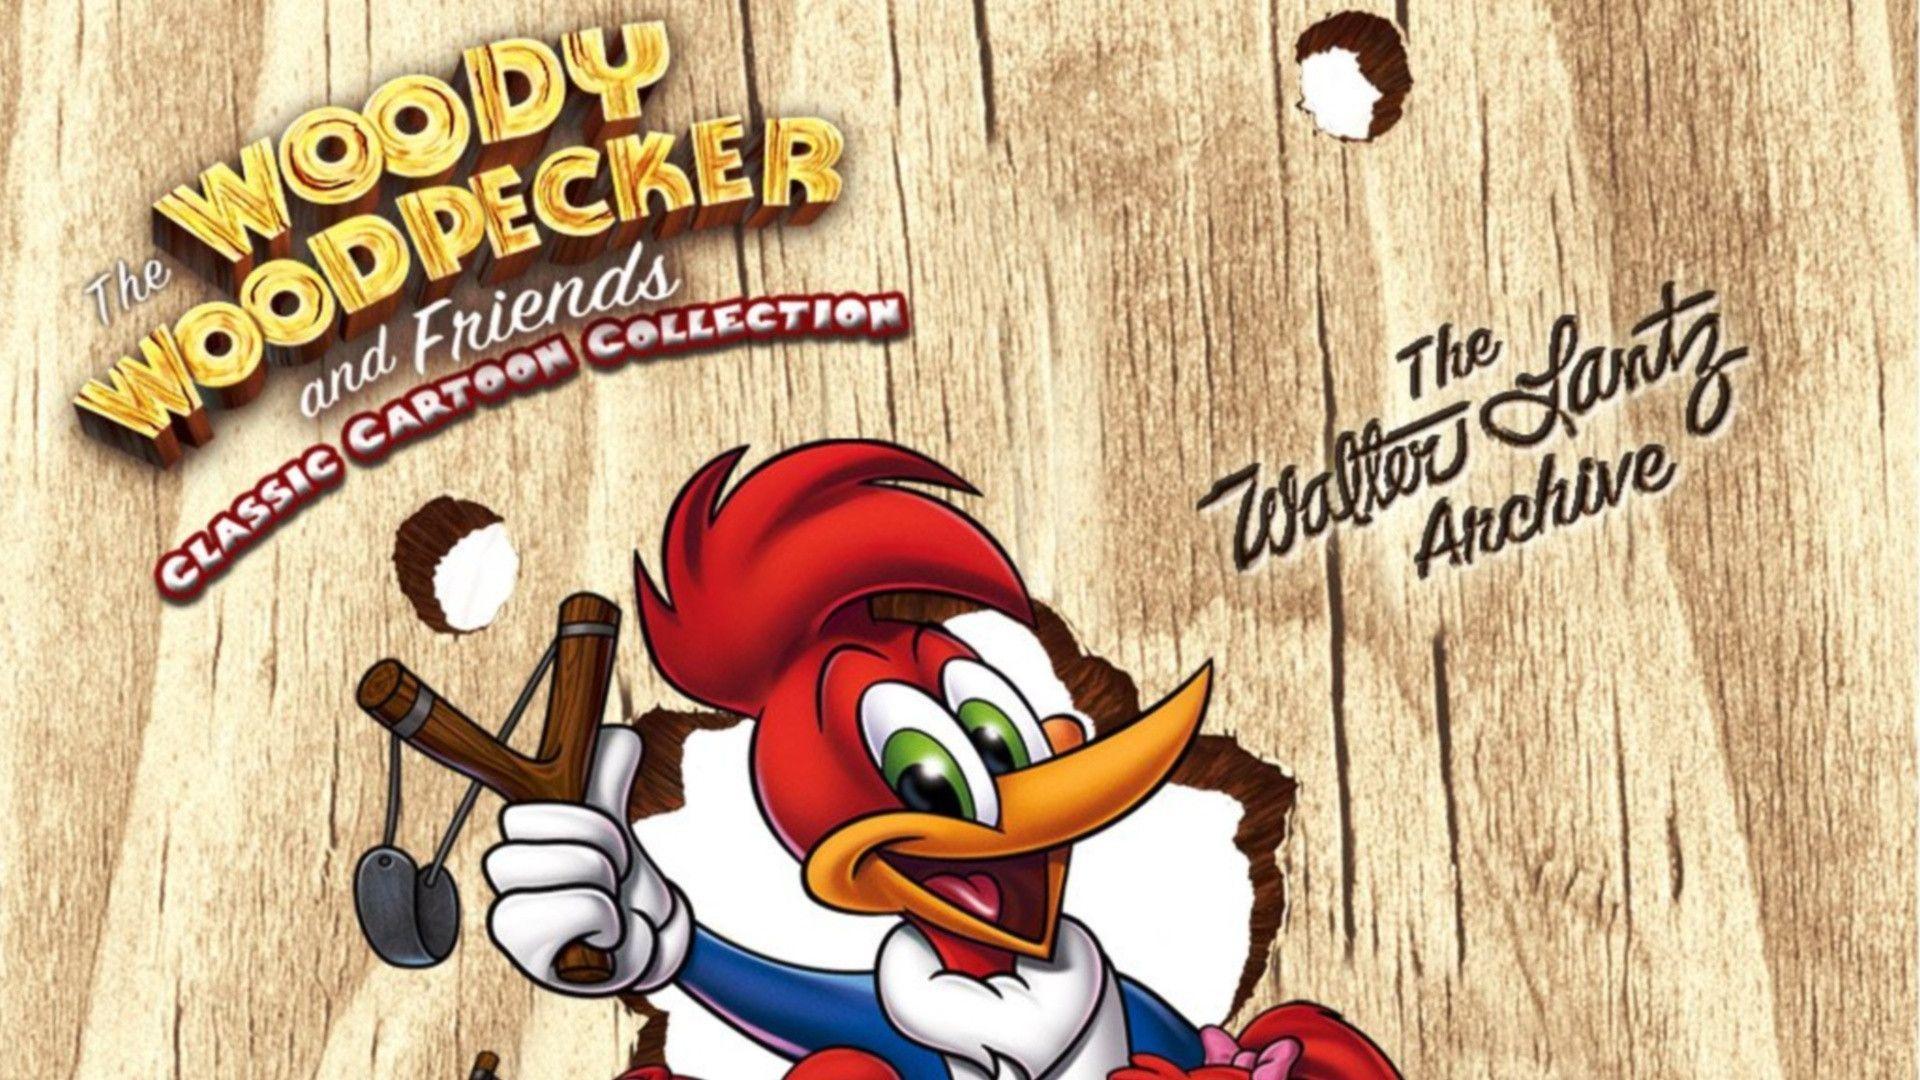 Top Galery Woody Woodpecker Download. ardiwallpaper